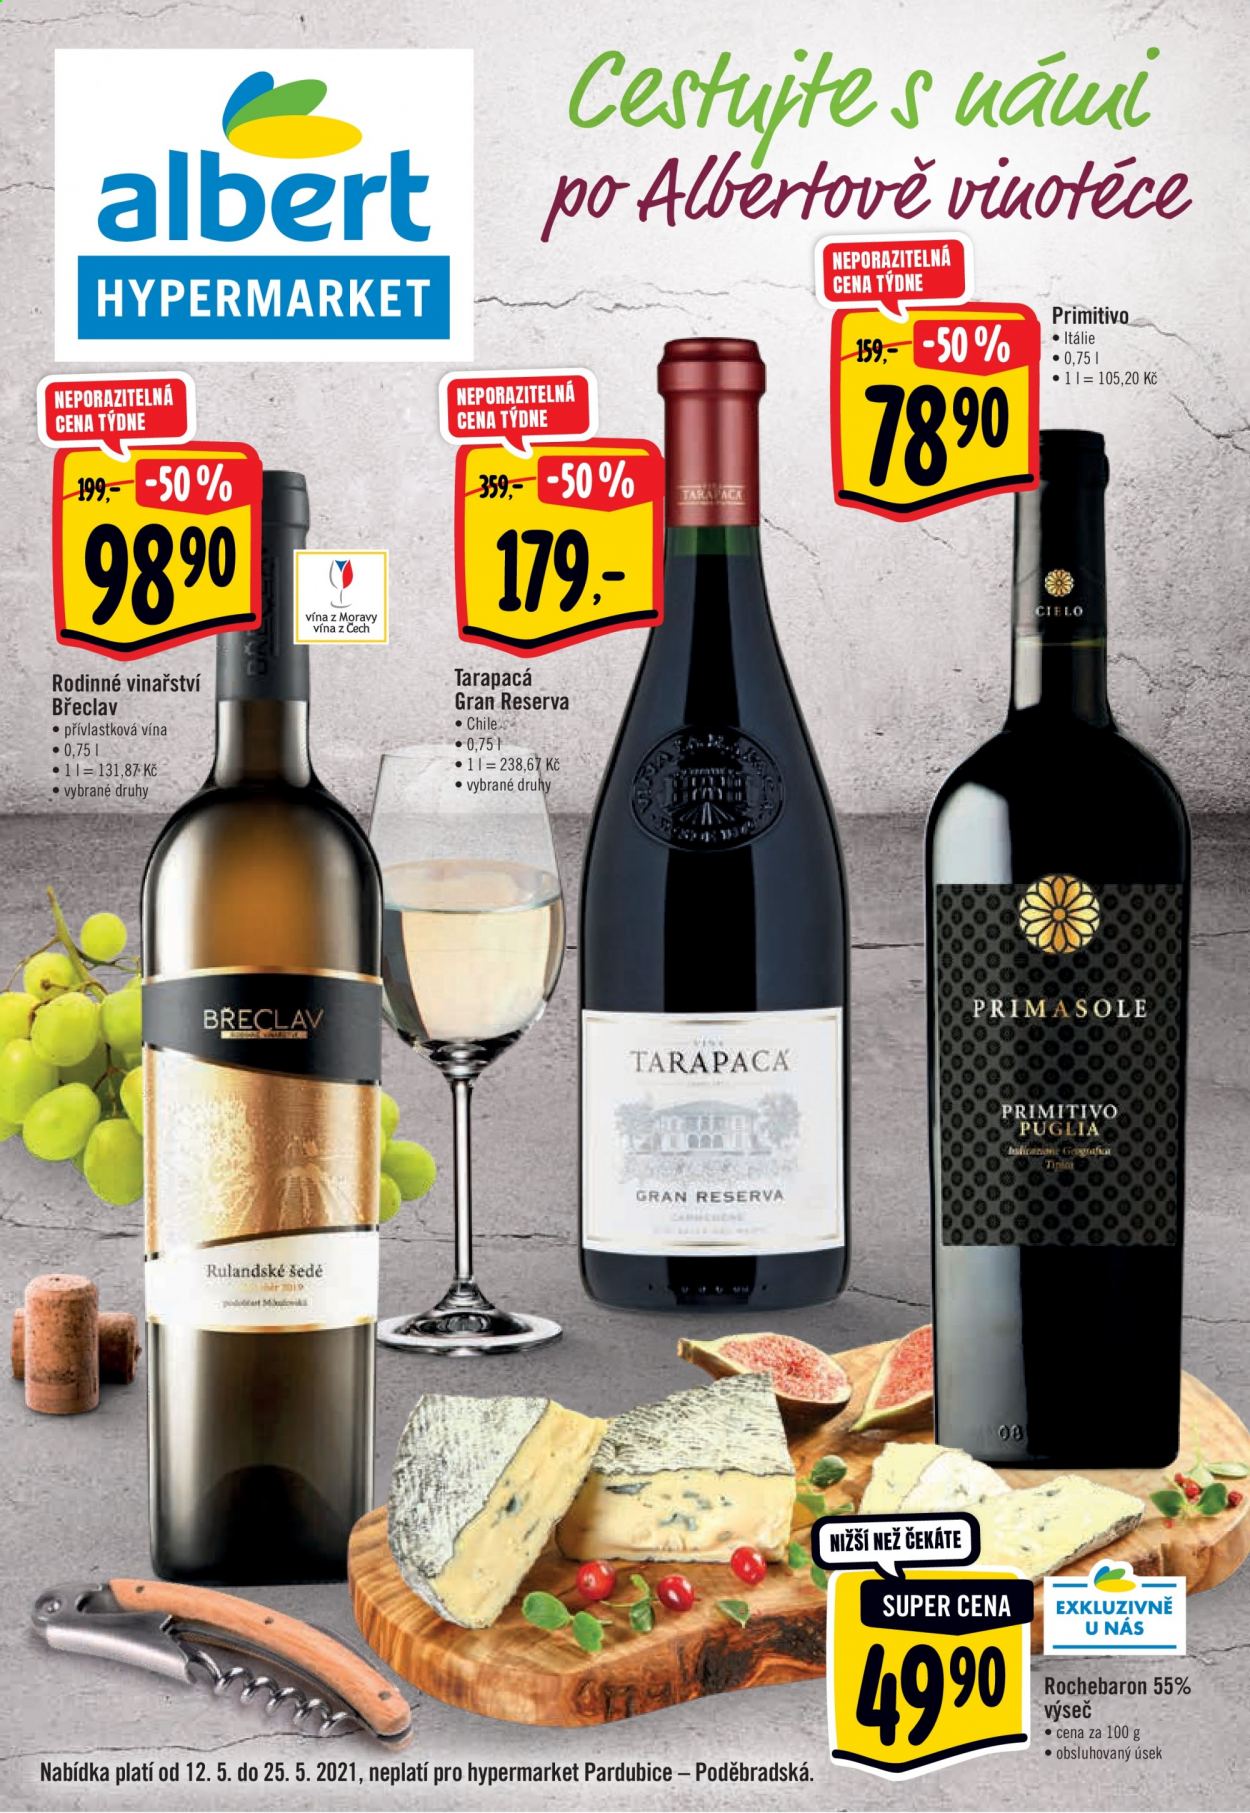 thumbnail - Leták Albert Hypermarket - 12.5.2021 - 25.5.2021 - Produkty v akci - Rochebaron, sýr, Rodinné vinařství Břeclav, alkohol, Tarapacá, víno. Strana 1.